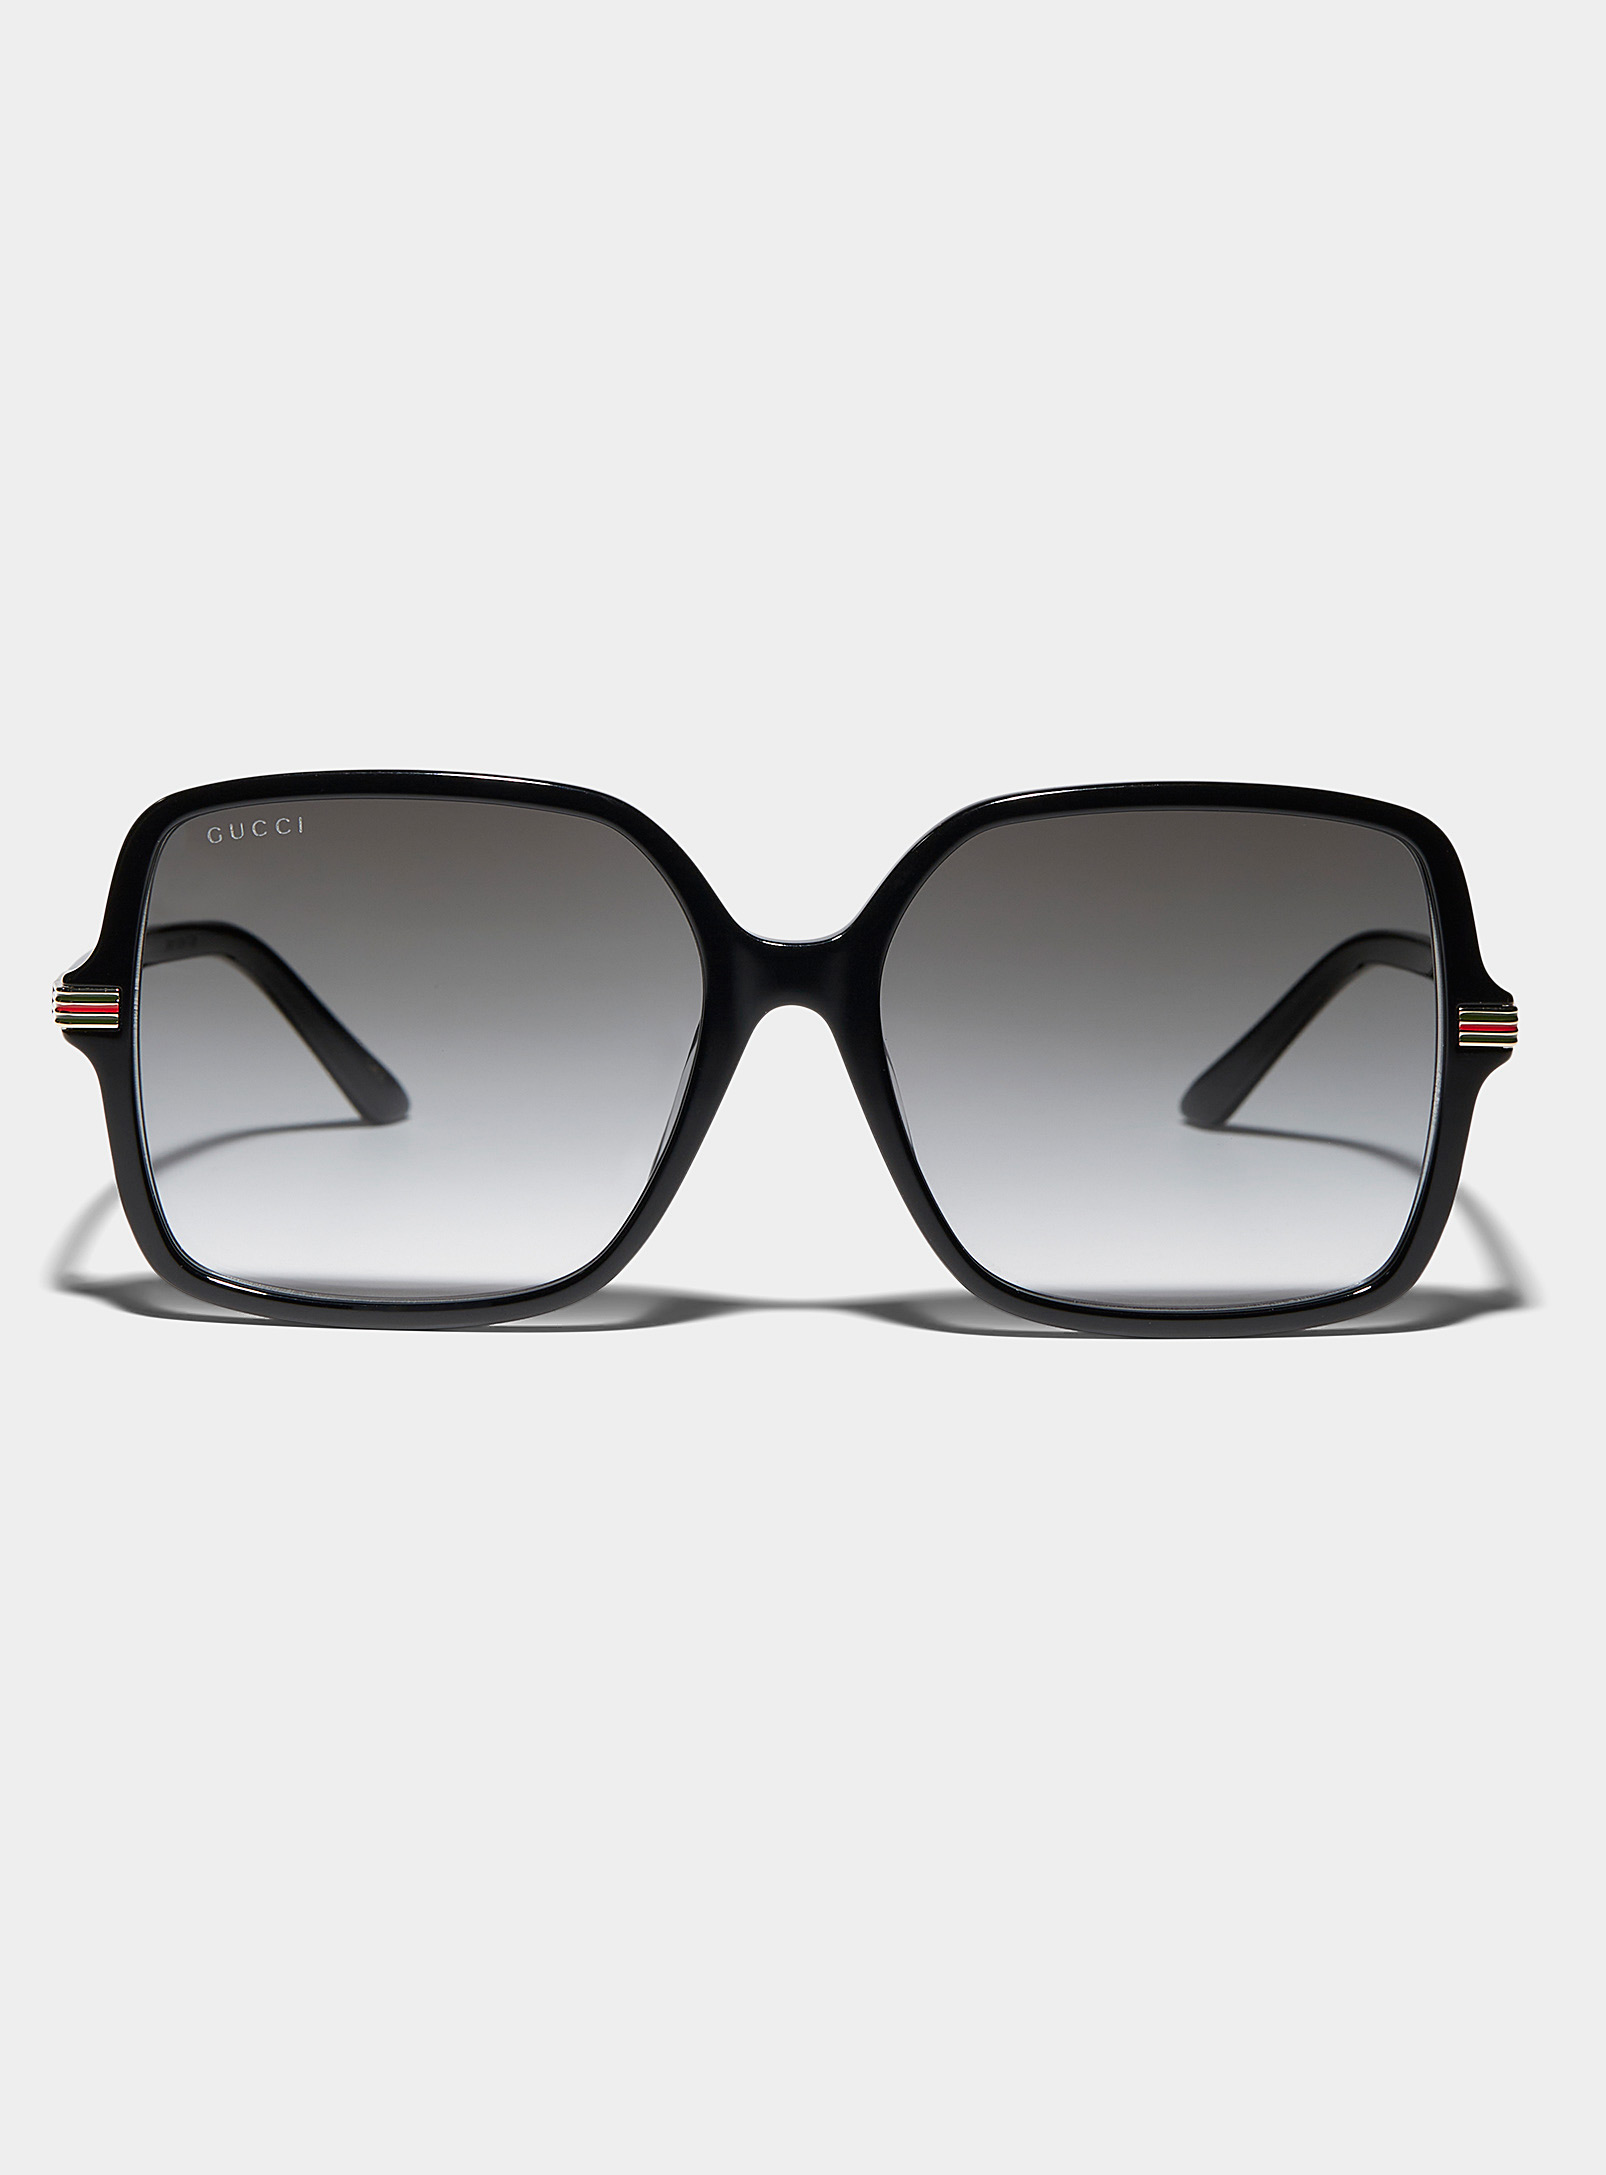 Gucci - Les lunettes de soleil carrées rayures archives